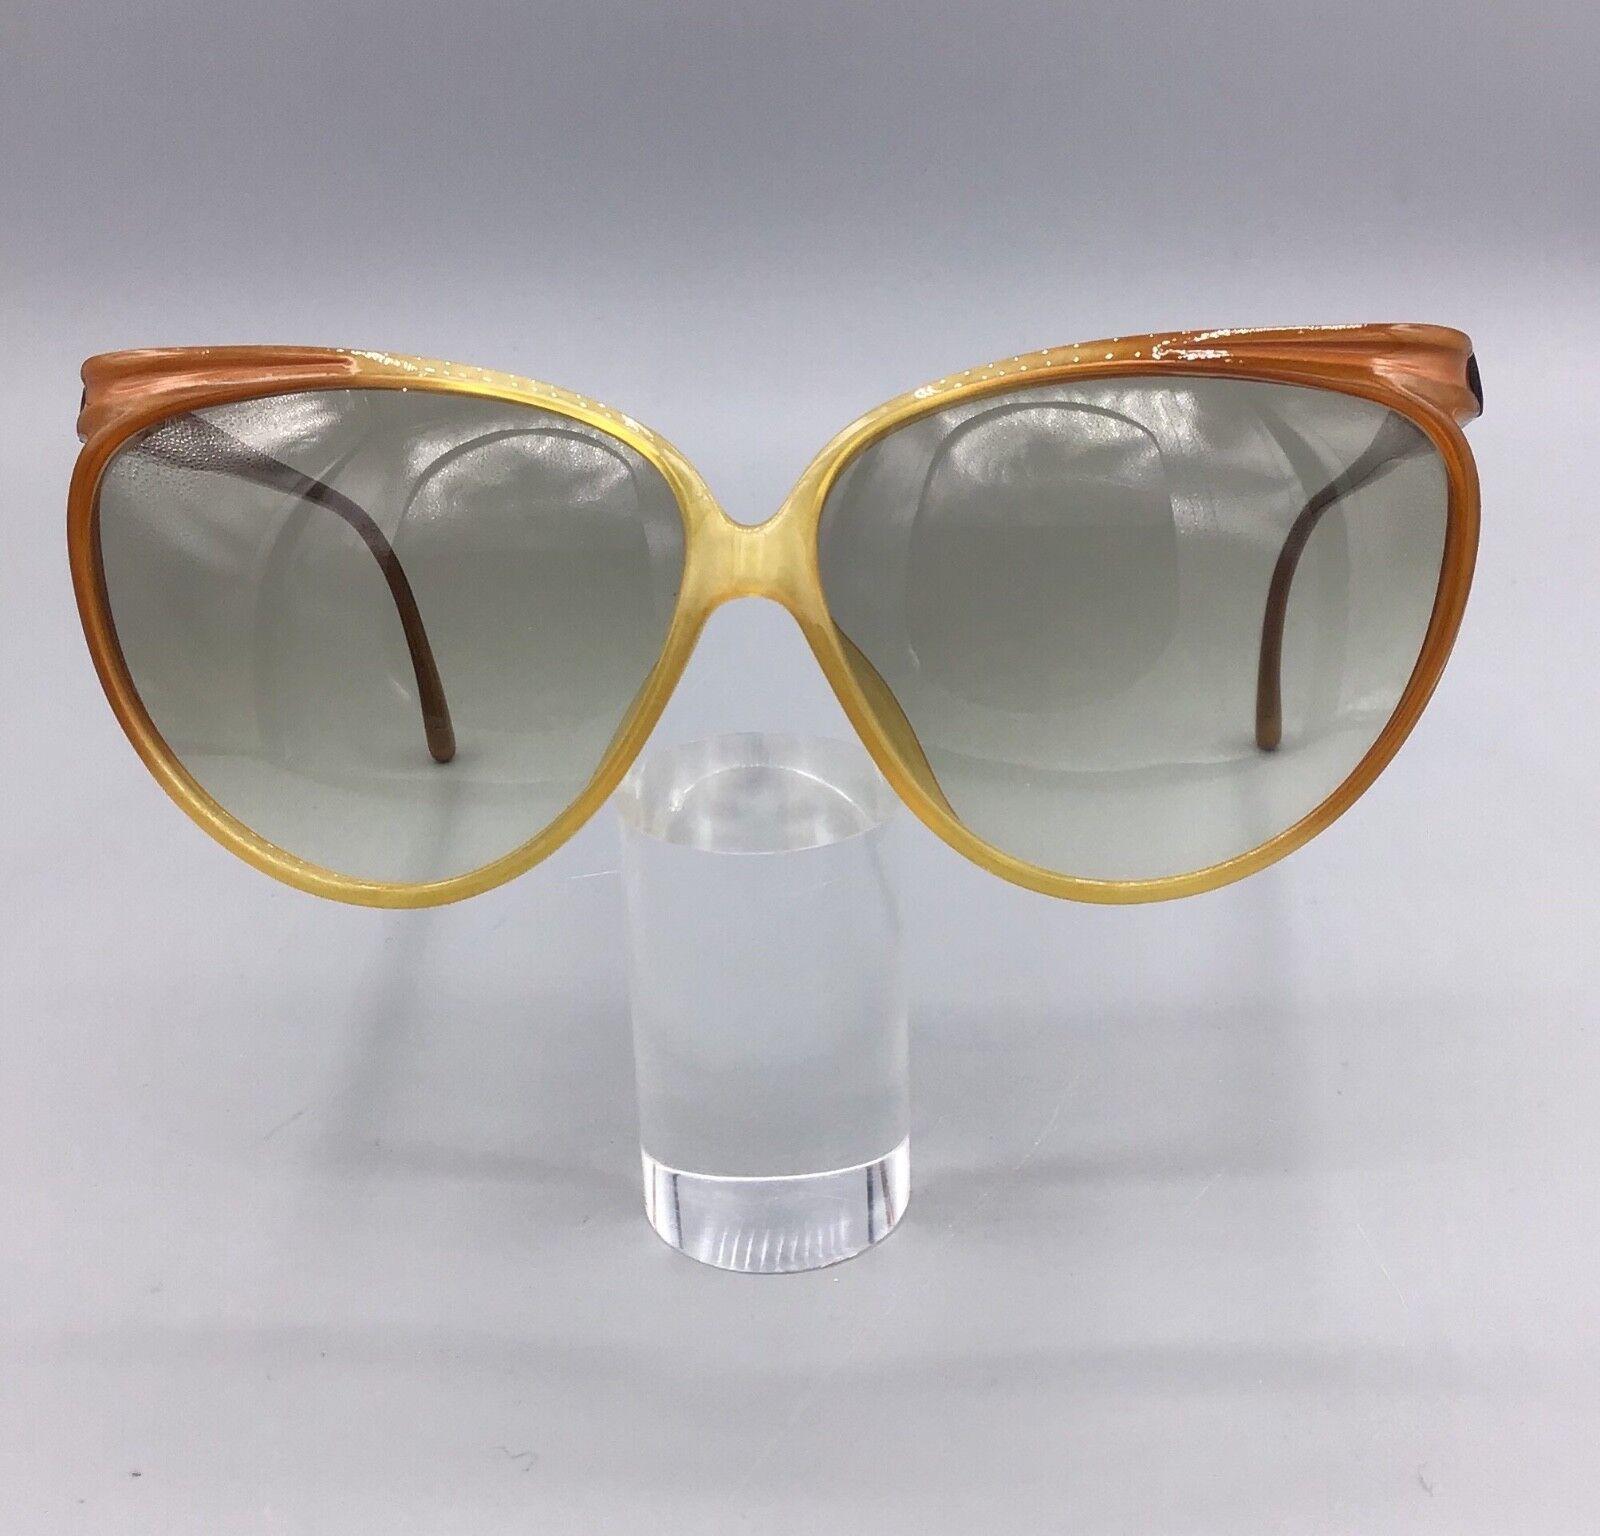 occhiale vintage ViennaLine Sunglasses modello 1800 sonnenbrillen lunettes gafas de sol